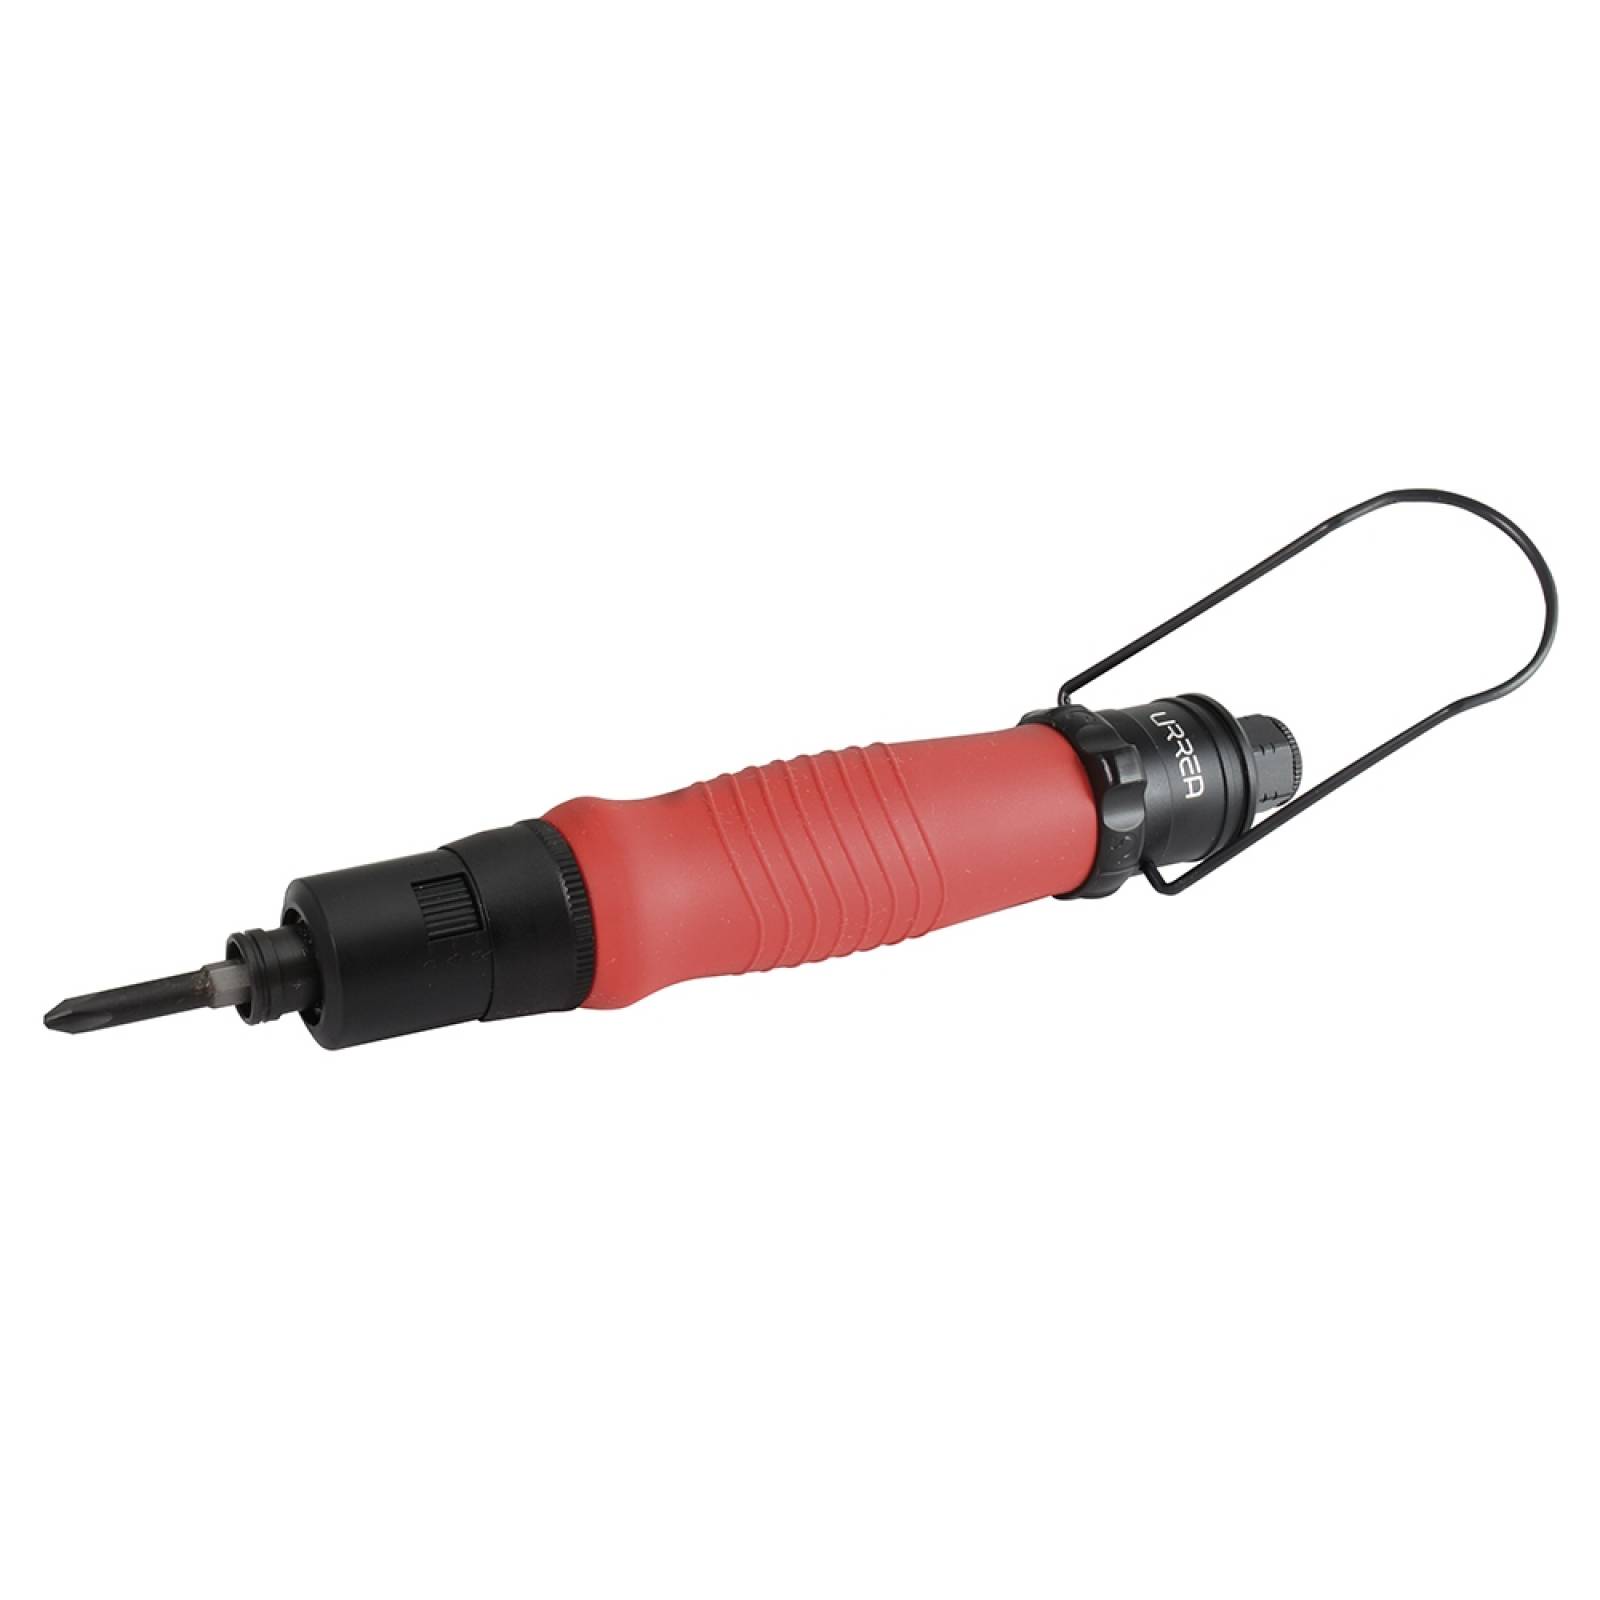 Destornillador neumático tipo lápiz 1/4" 1800rpm  UPTC30 Urrea